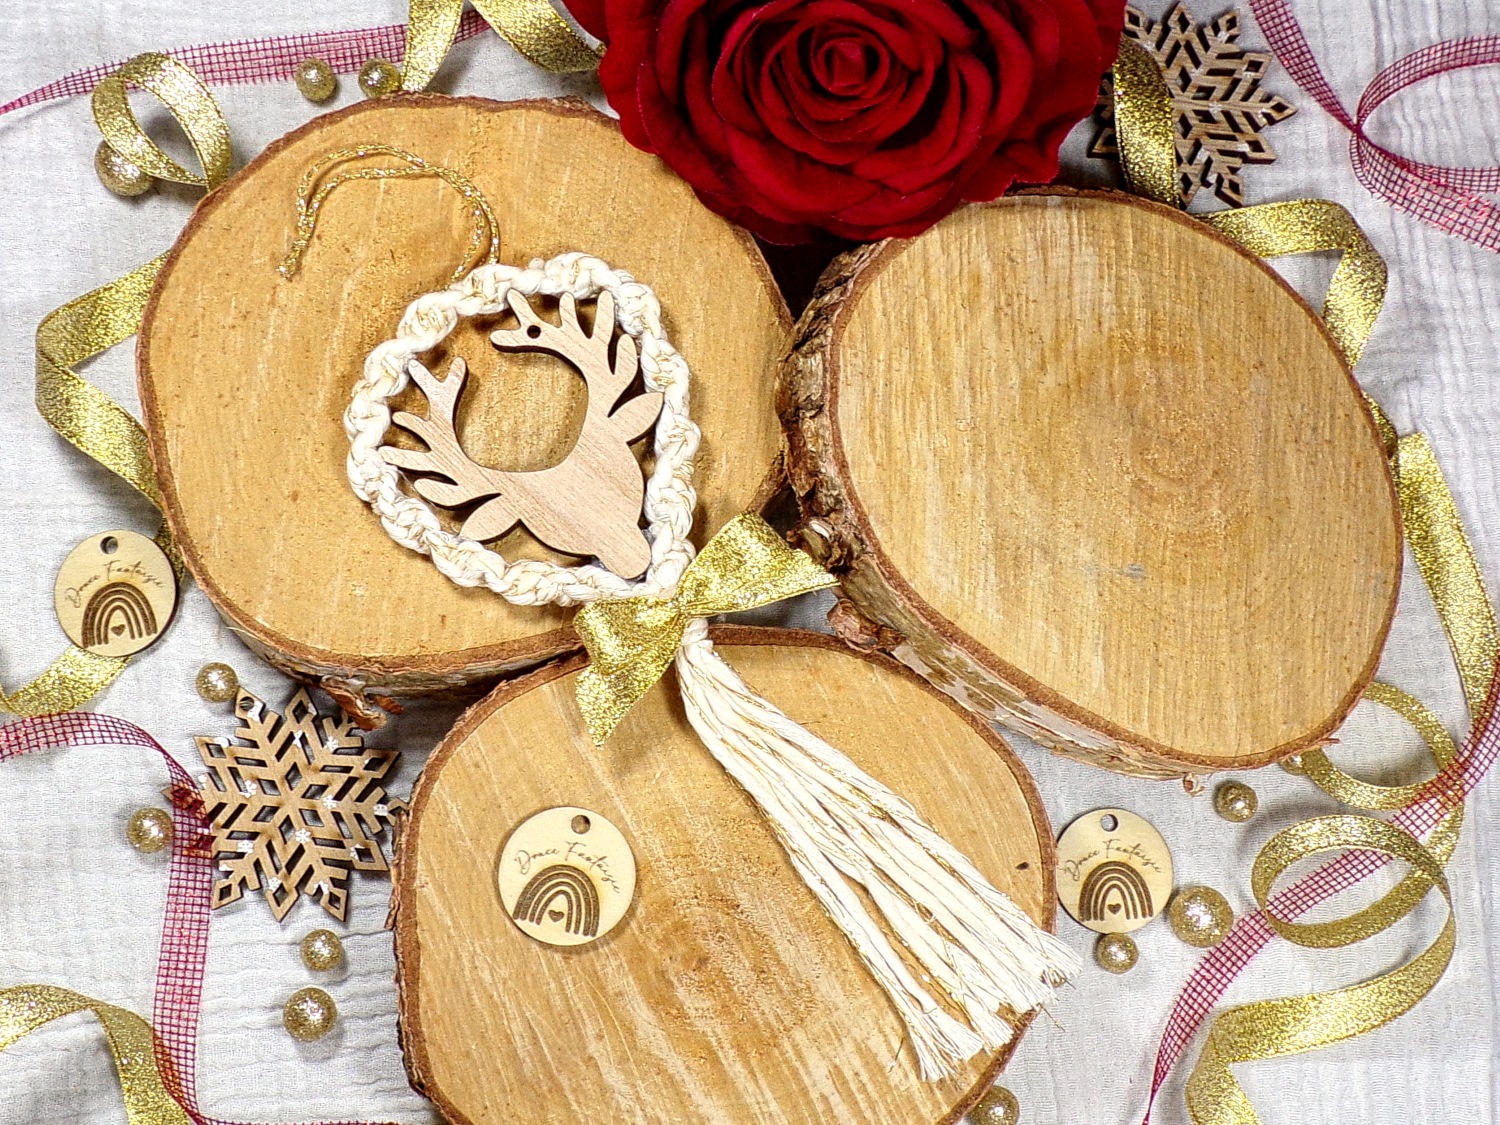 decoration noël beige doré cerf macramé couronne bois